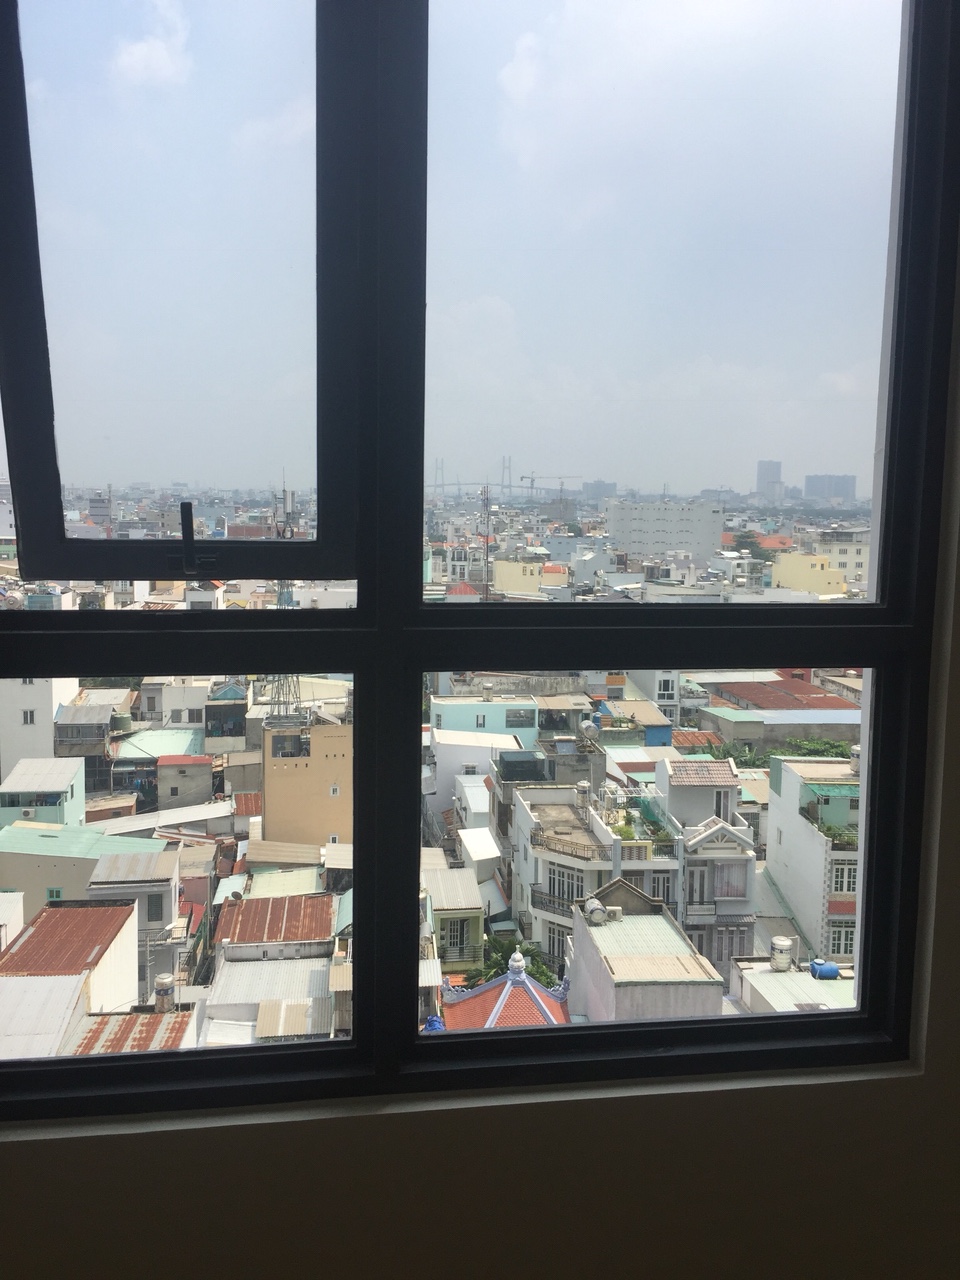 Tôi cần bán gấp, căn hộ M-One Nam Sài Gòn Quận 7, 84m2 Căn góc 2 view, 3PN 2WC, giá 2,550 tỷ